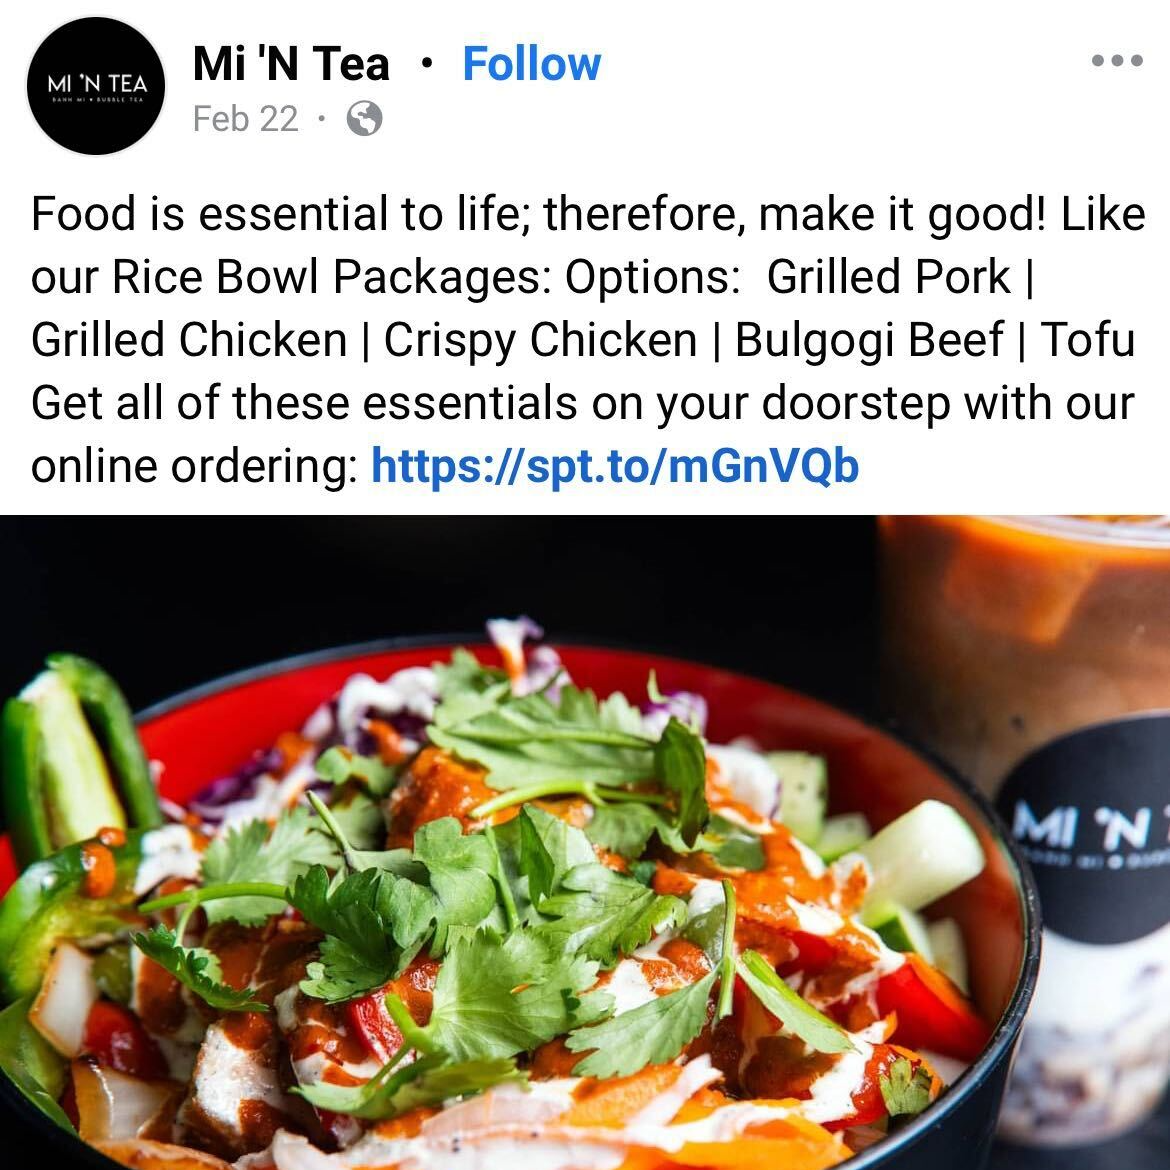 Mi 'N Tea Facebook post promoting online ordering